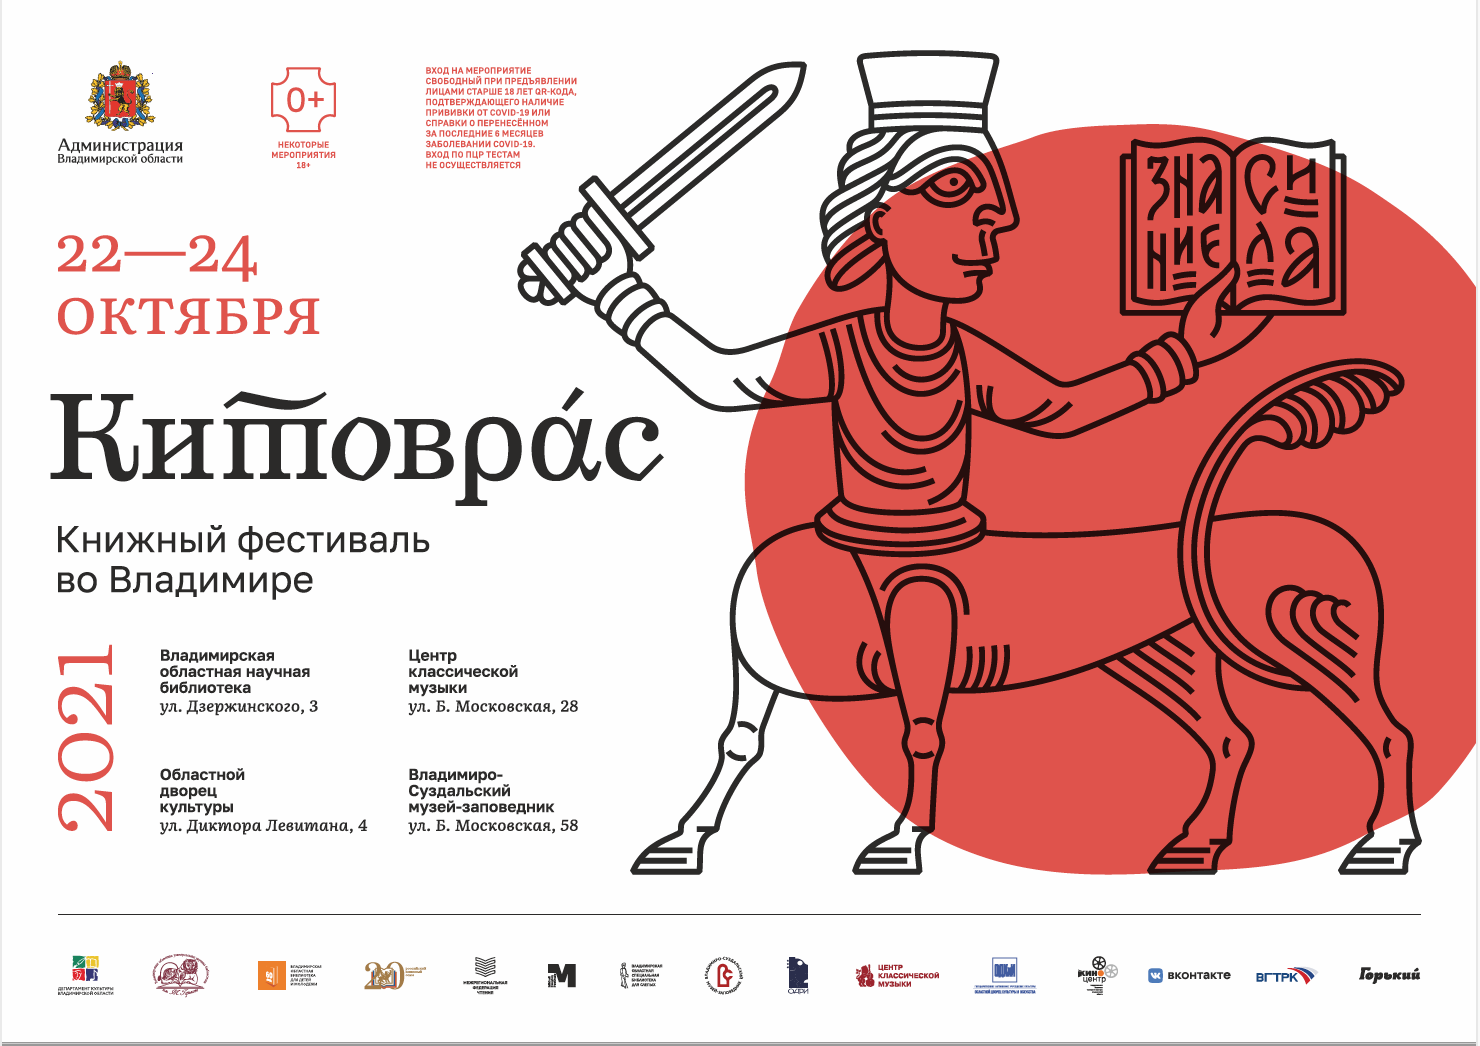 Пресс-конференция фестиваля "Китоврас"